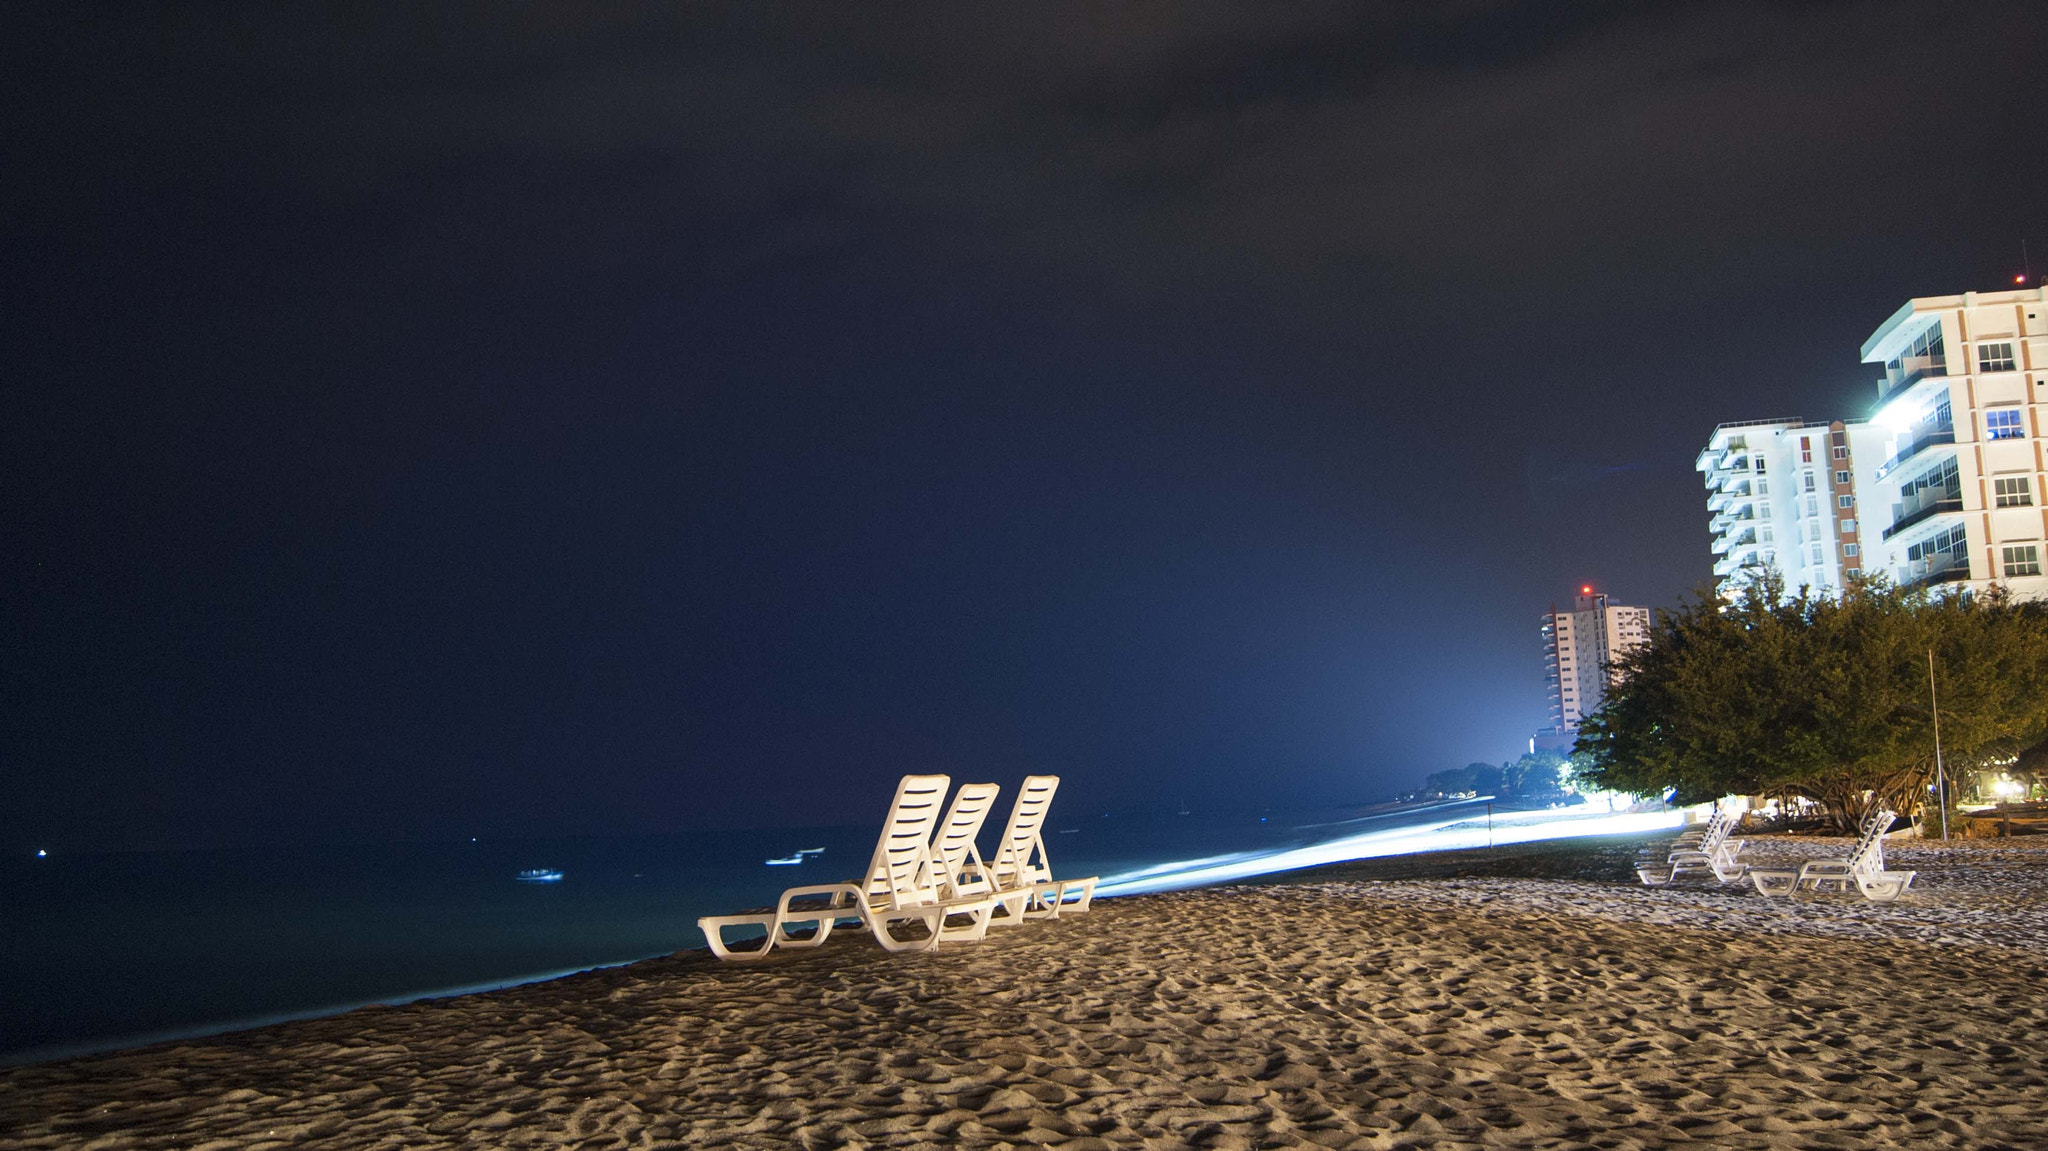 Sony Alpha DSLR-A230 sample photo. La noche, el mar, tú y yo  ©liz photography photography